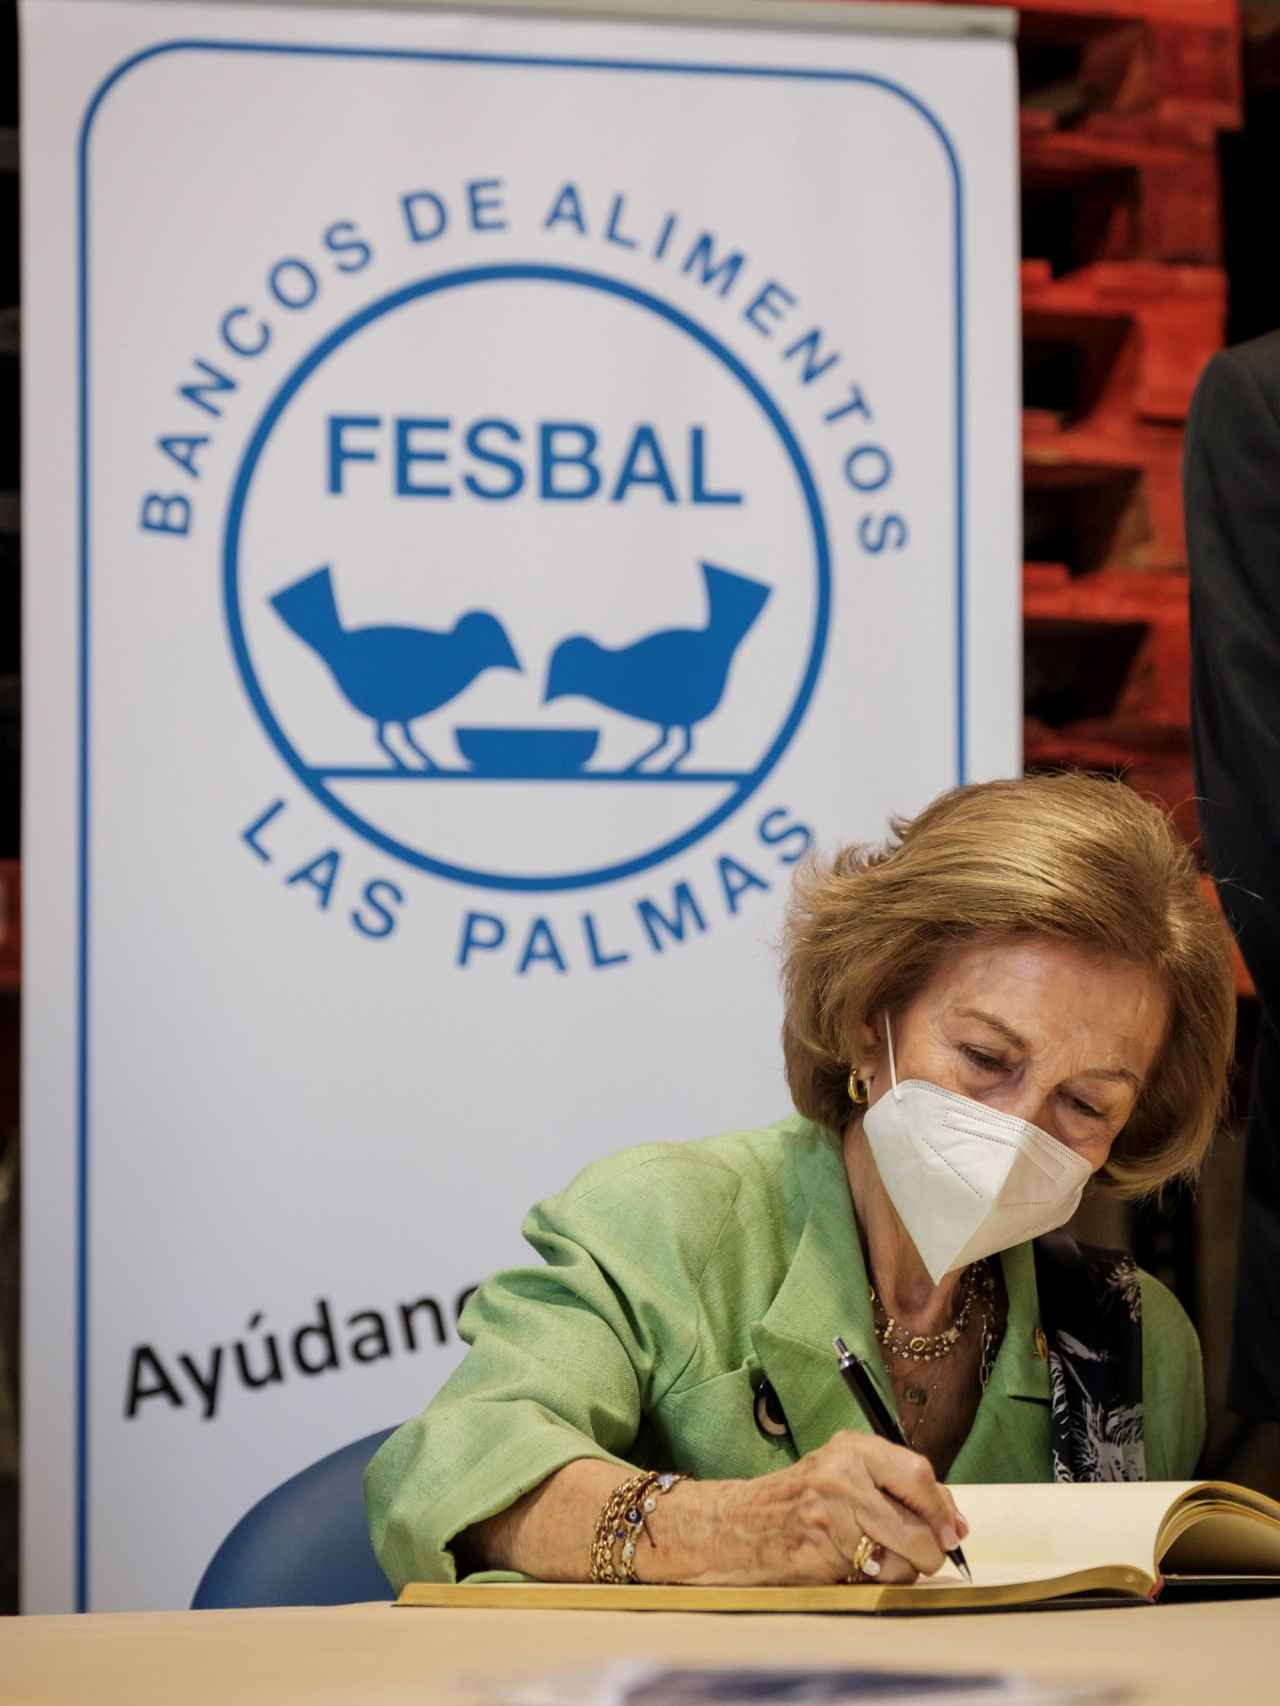 La reina Sofía ha hecho un generoso donativo a FESBAL, entidad con la que colabora desde hace varios años.